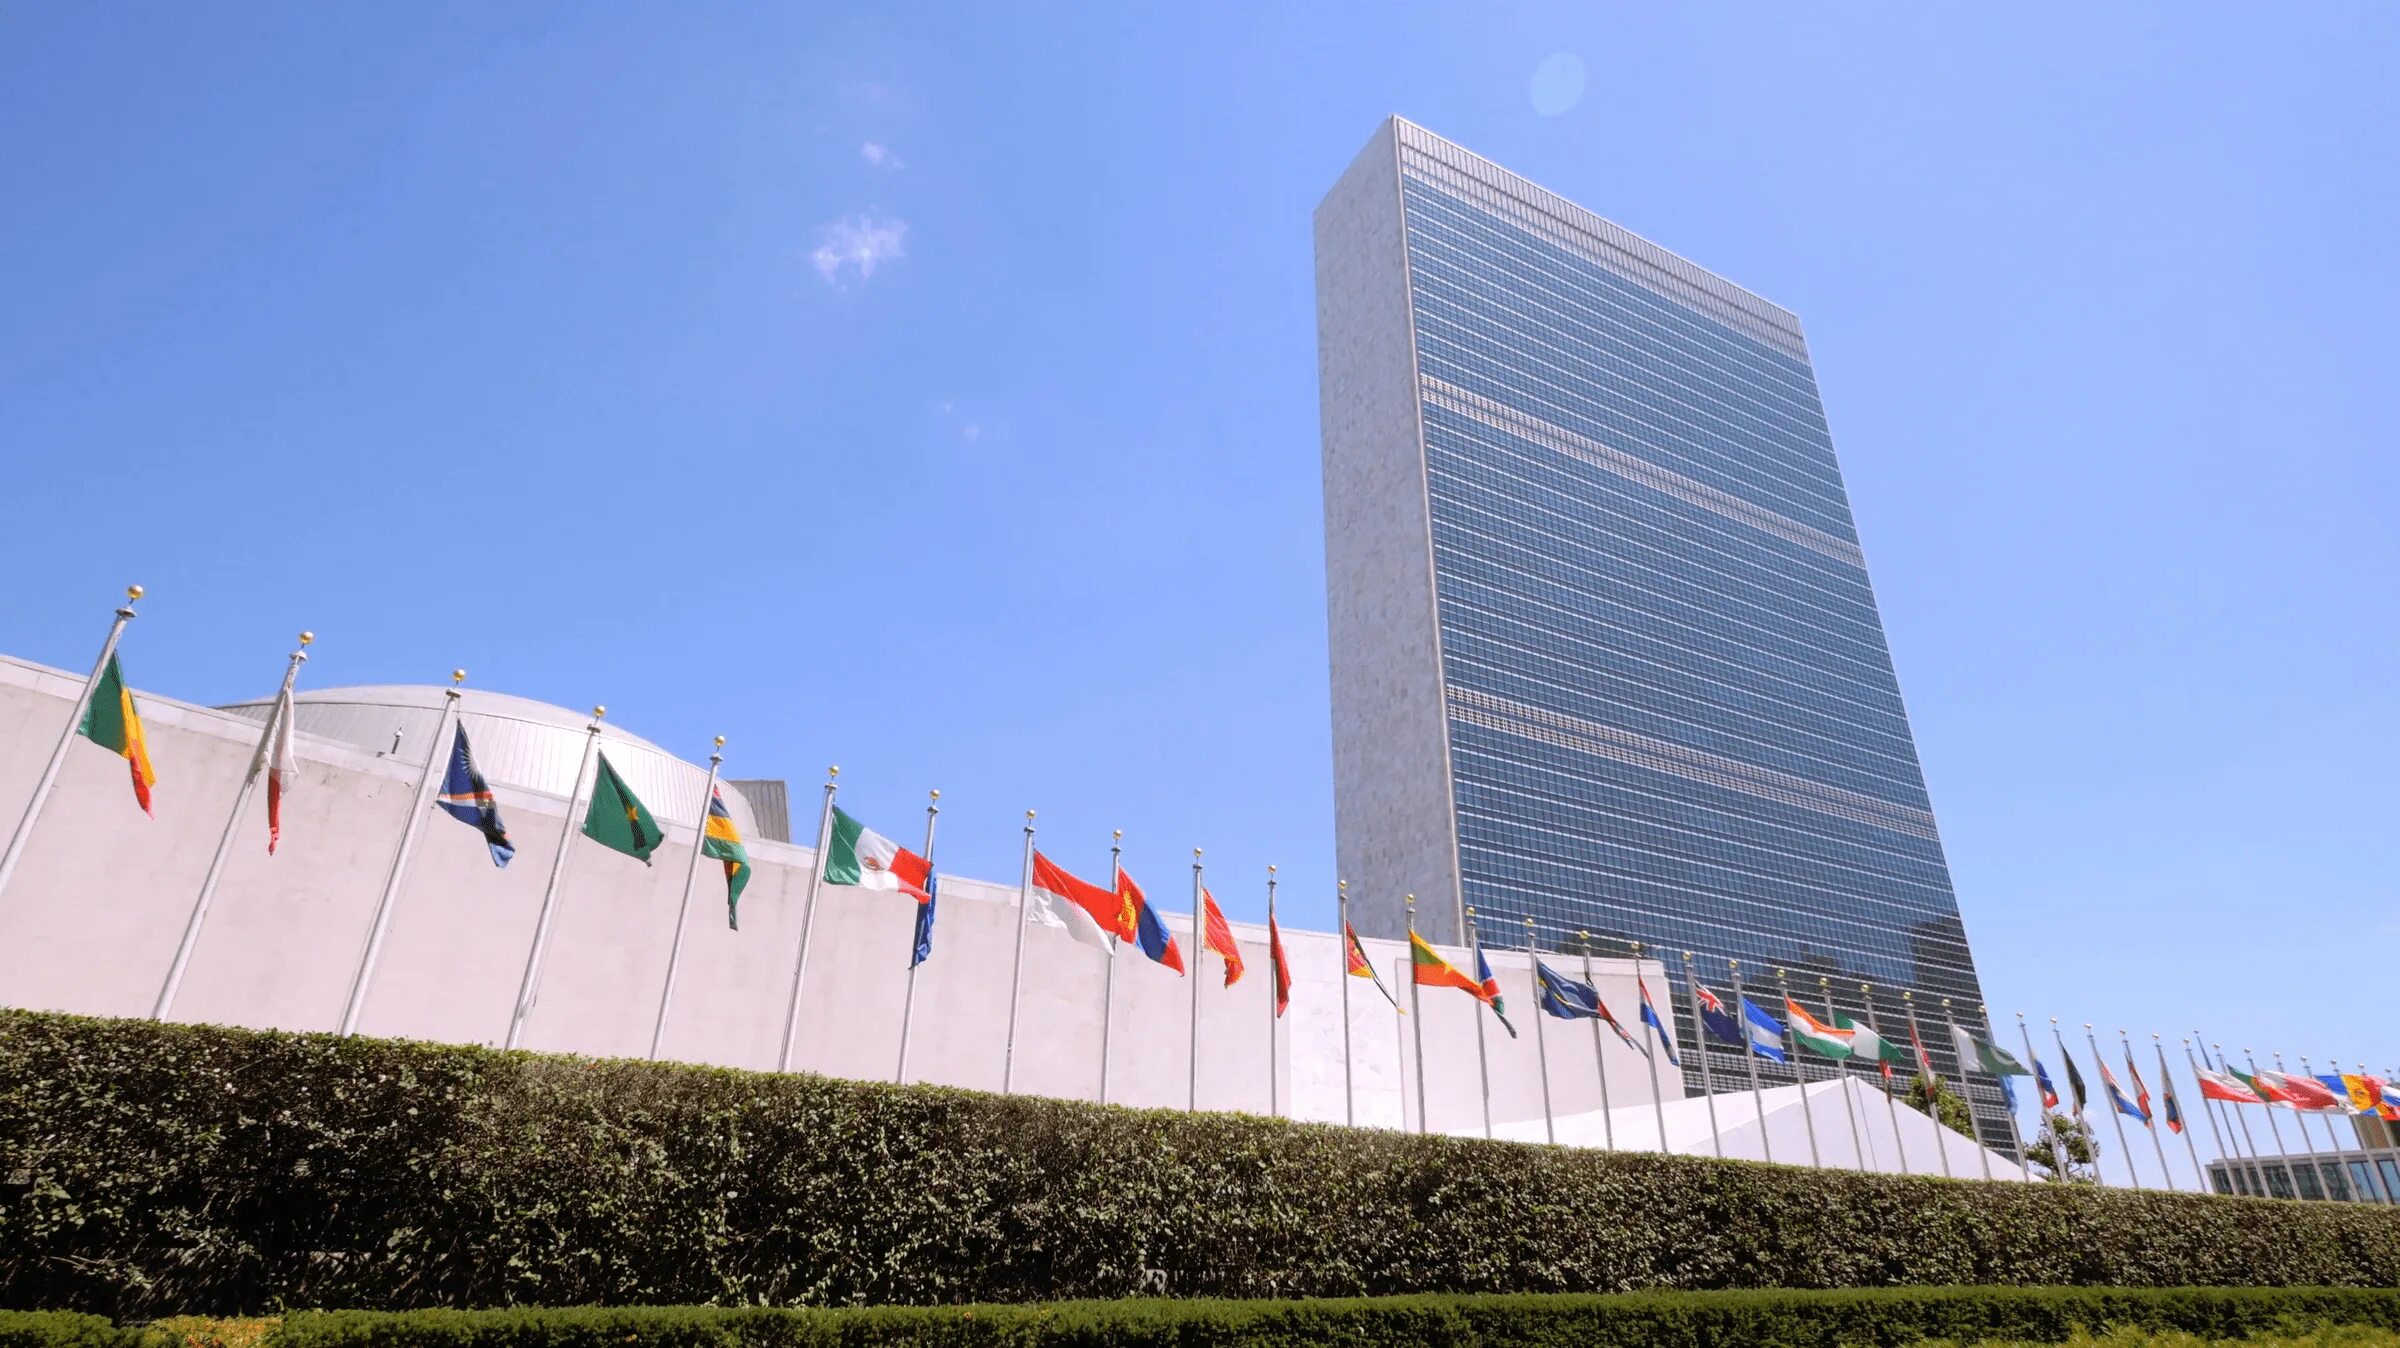 Город штаб оон. Штаб-квартира ООН В Нью-Йорке. Здание ООН В Нью-Йорке. United Nations Secretariat building штаб-квартира ООН. Здание секретариата ООН В Нью-Йорке.